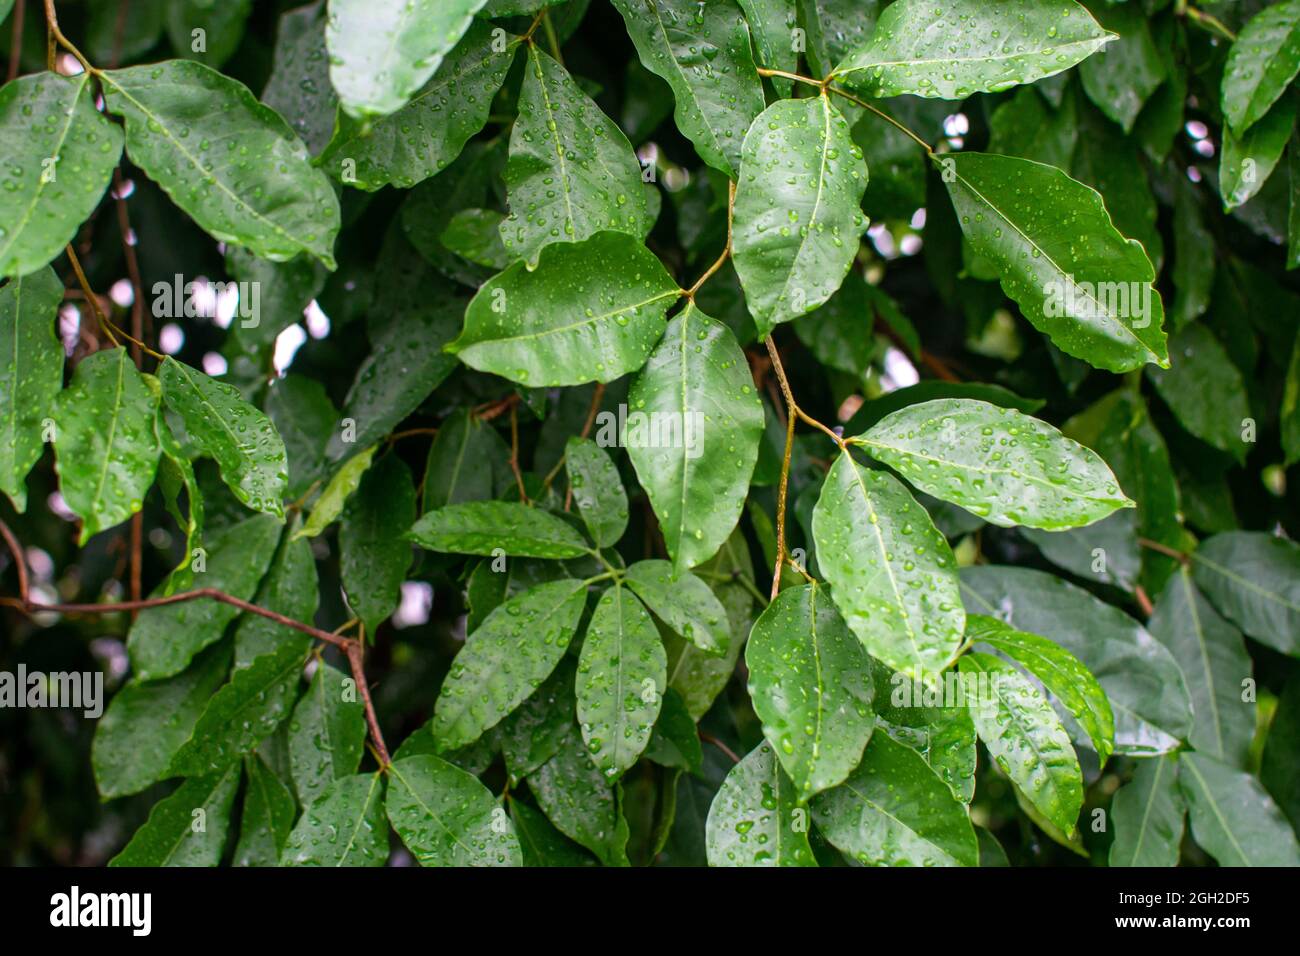 Collection botanique, Cinnamomum, feuilles humides de cannelle indonésienne tropicale verte, source de bâtons de cannelle aromatique Banque D'Images